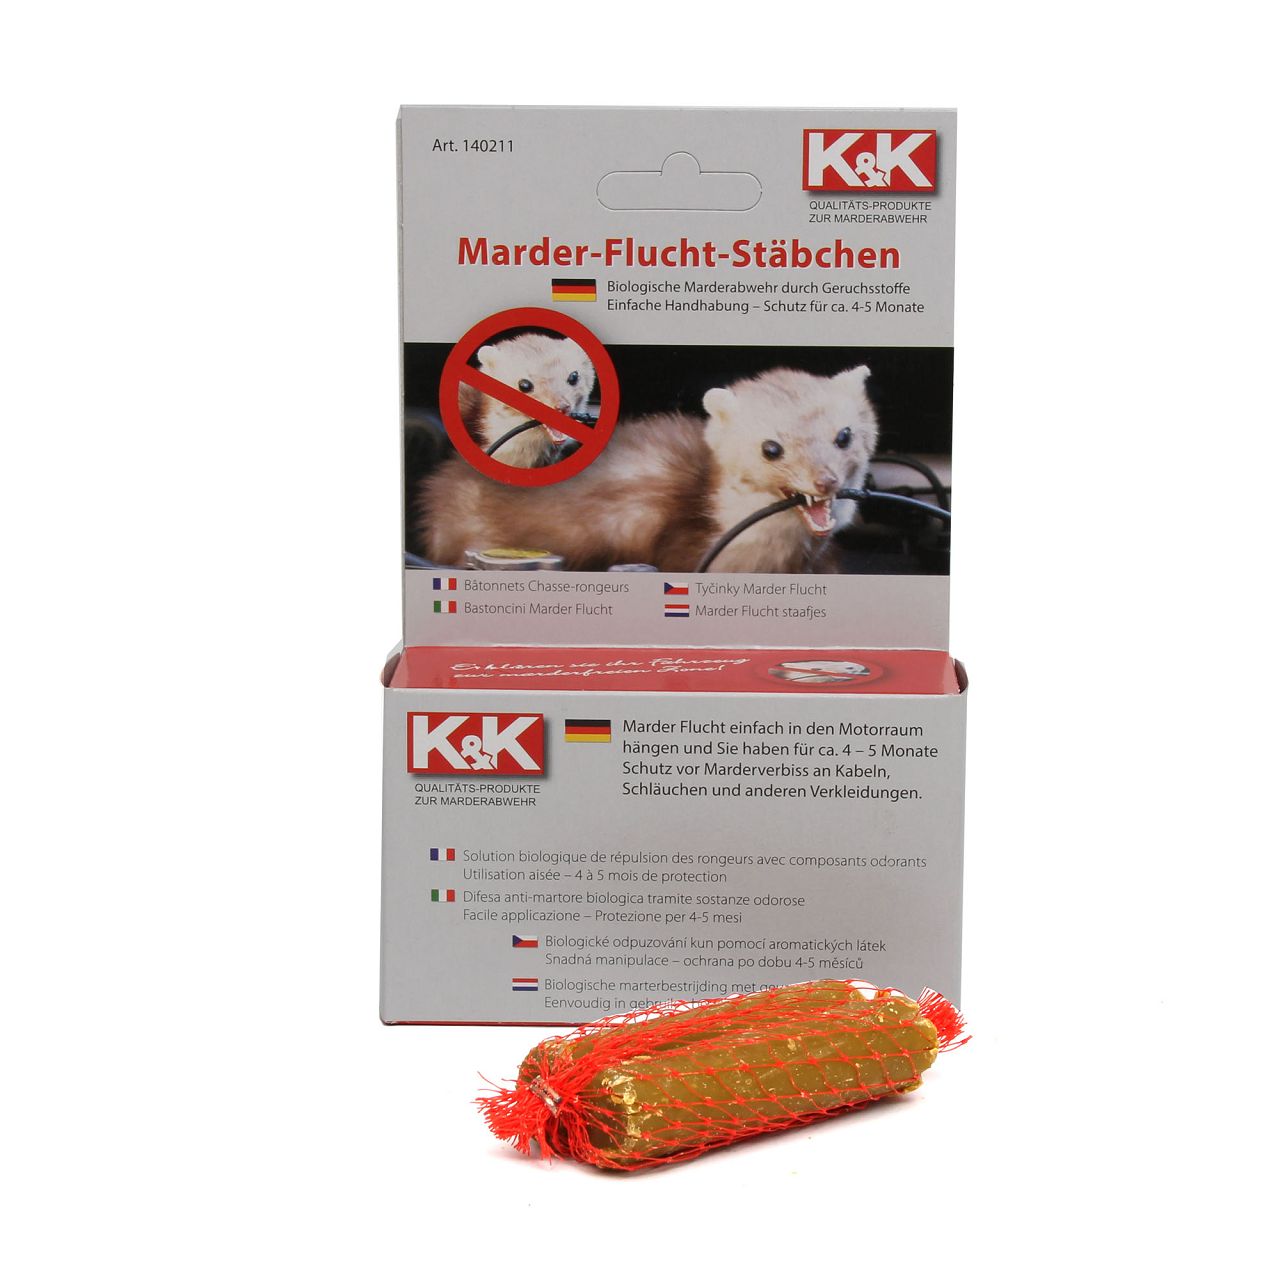 K&K Marderschutzspray Anti Marderspray Marderabwehr Marderduftspray 500ml  000500 